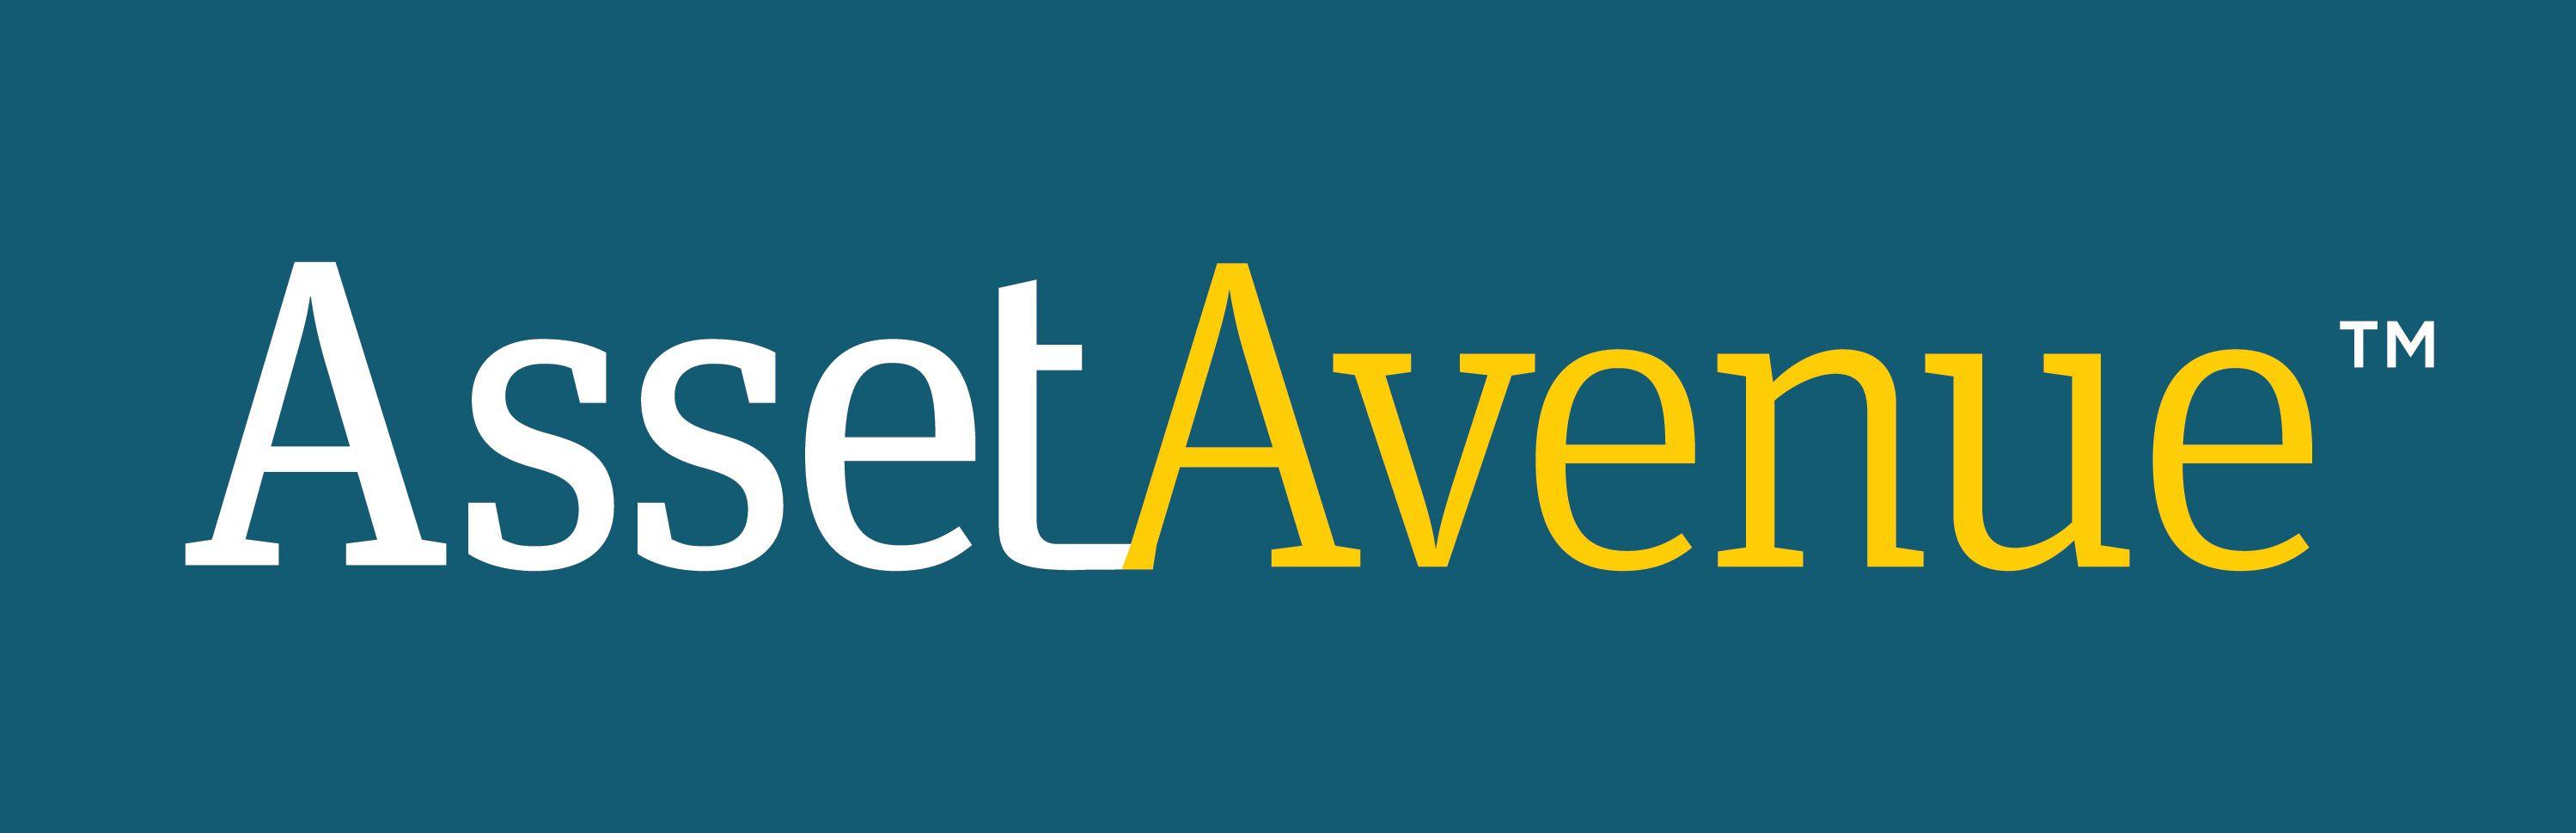 Assetavenue Logo - AssetAvenue logo_new (1)